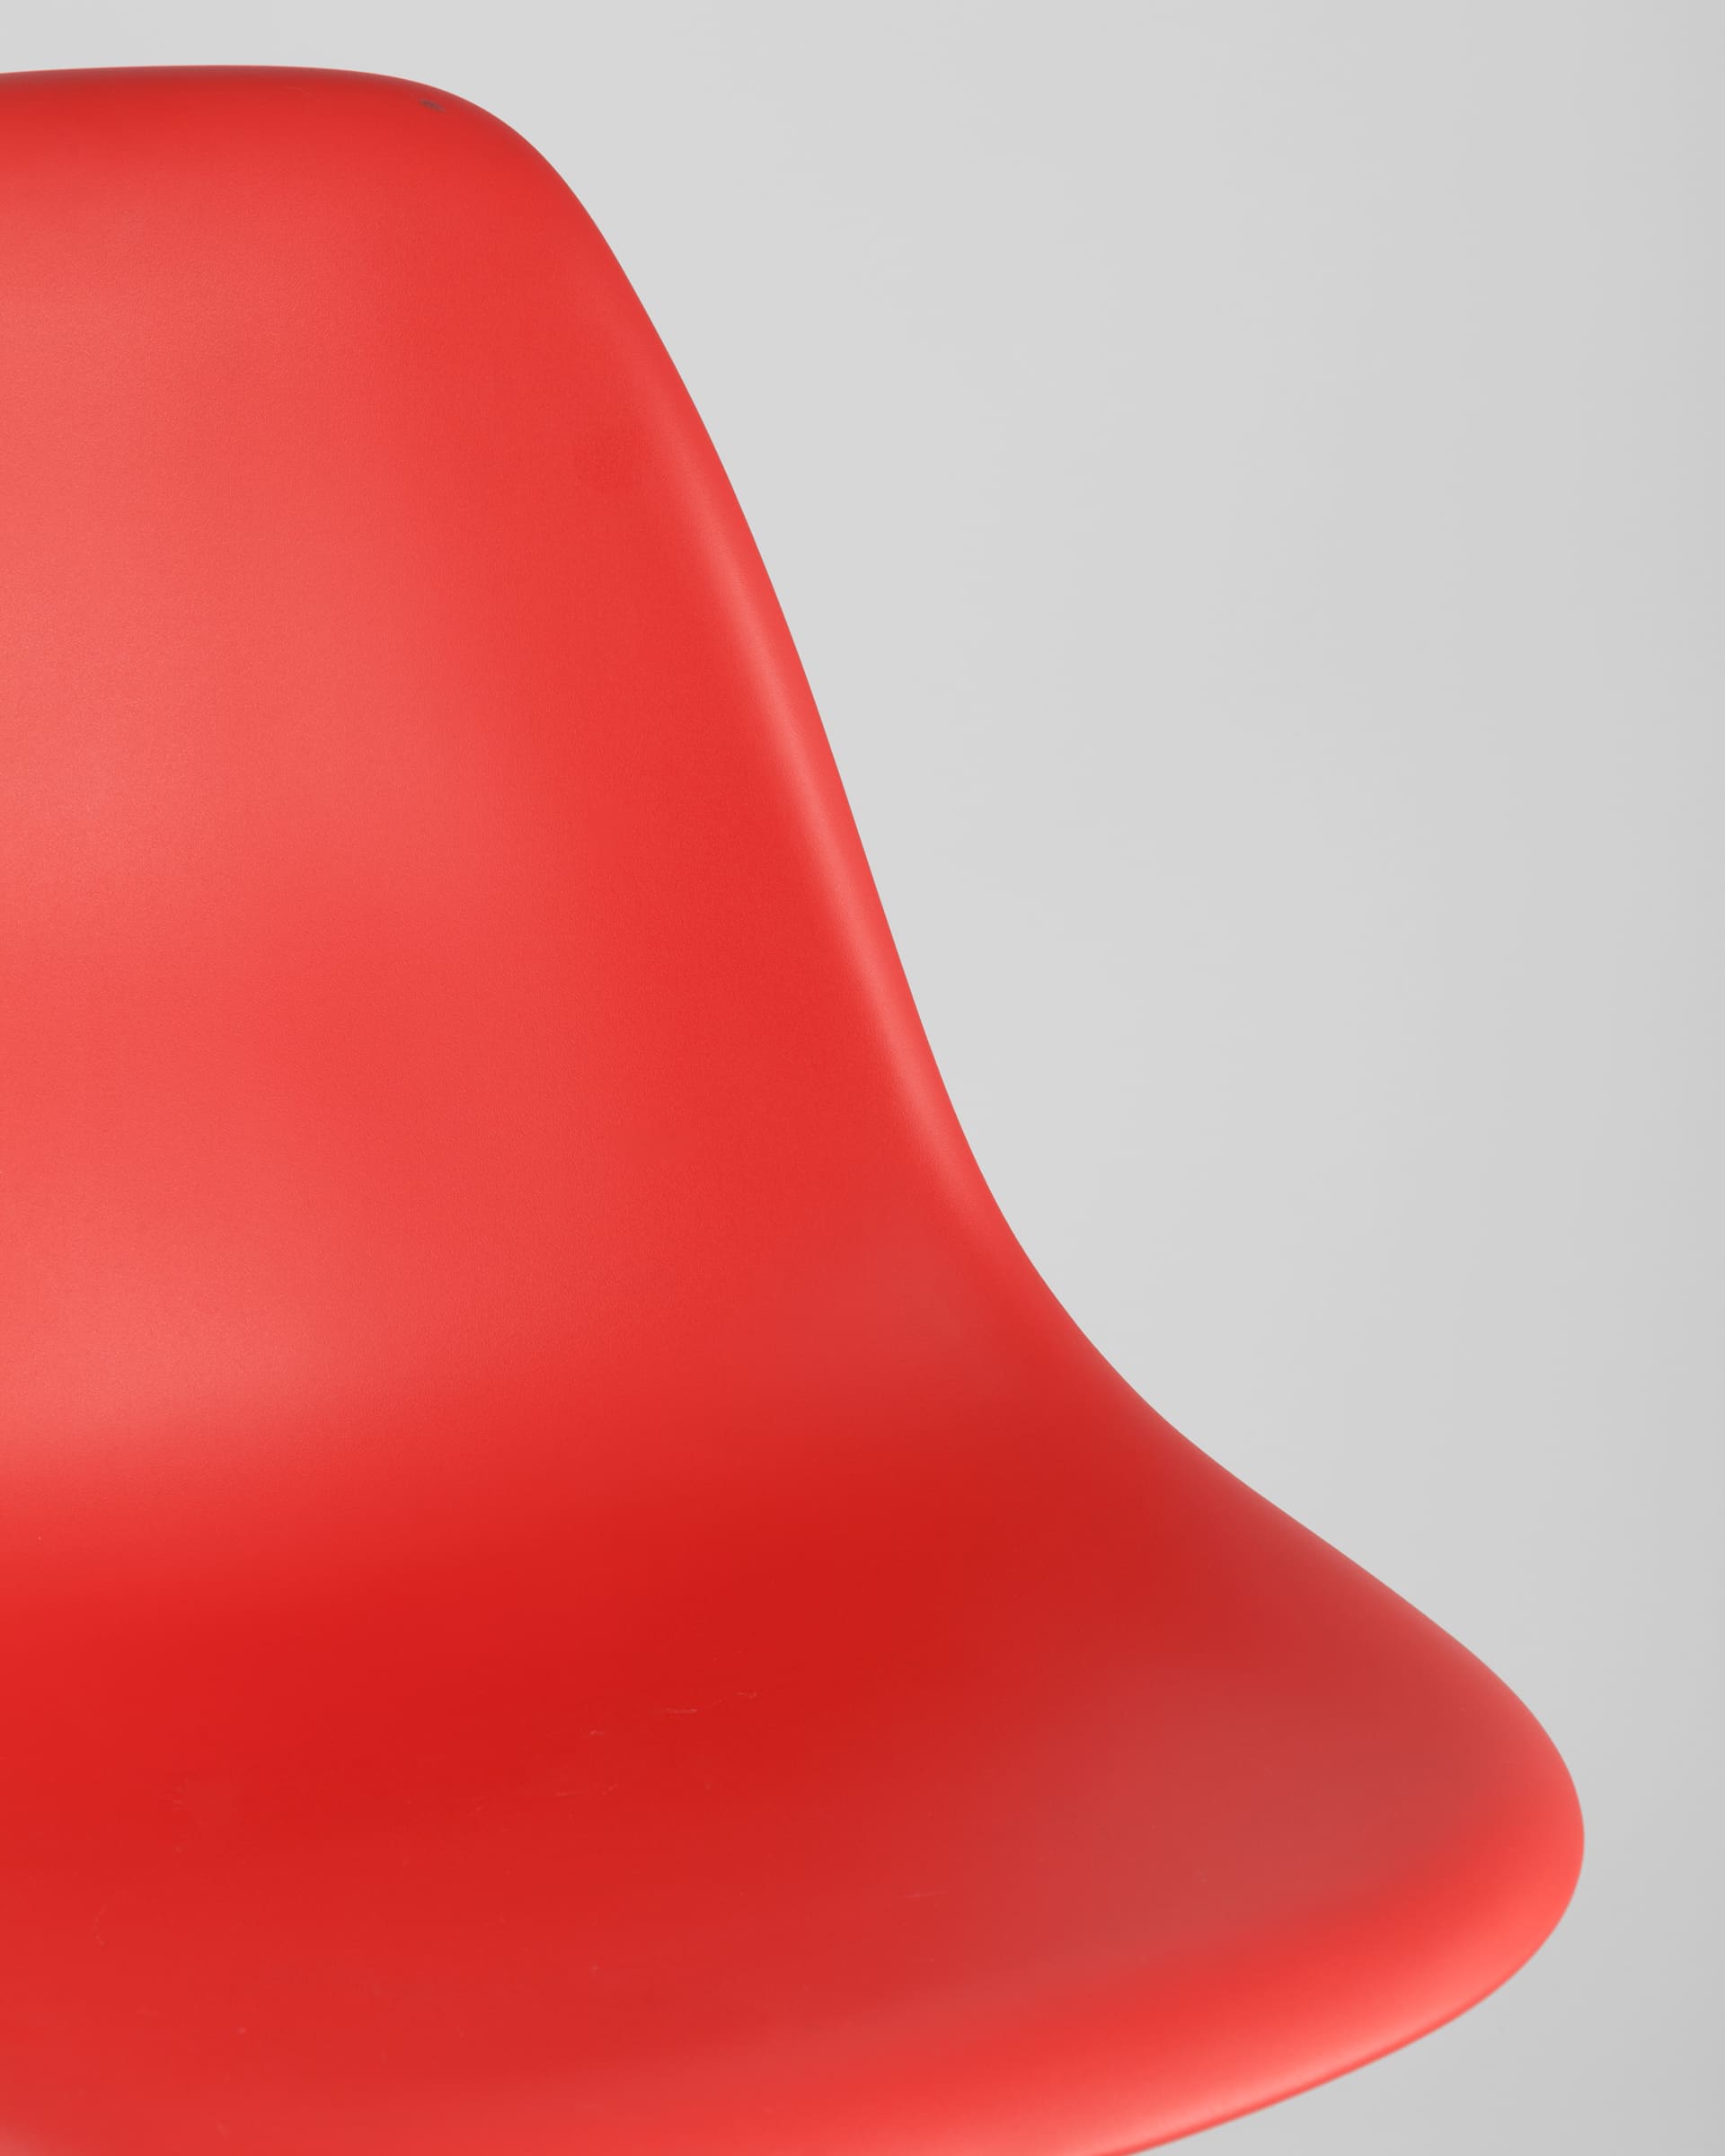 Комплект стульев Eames DSW красный x4 шт